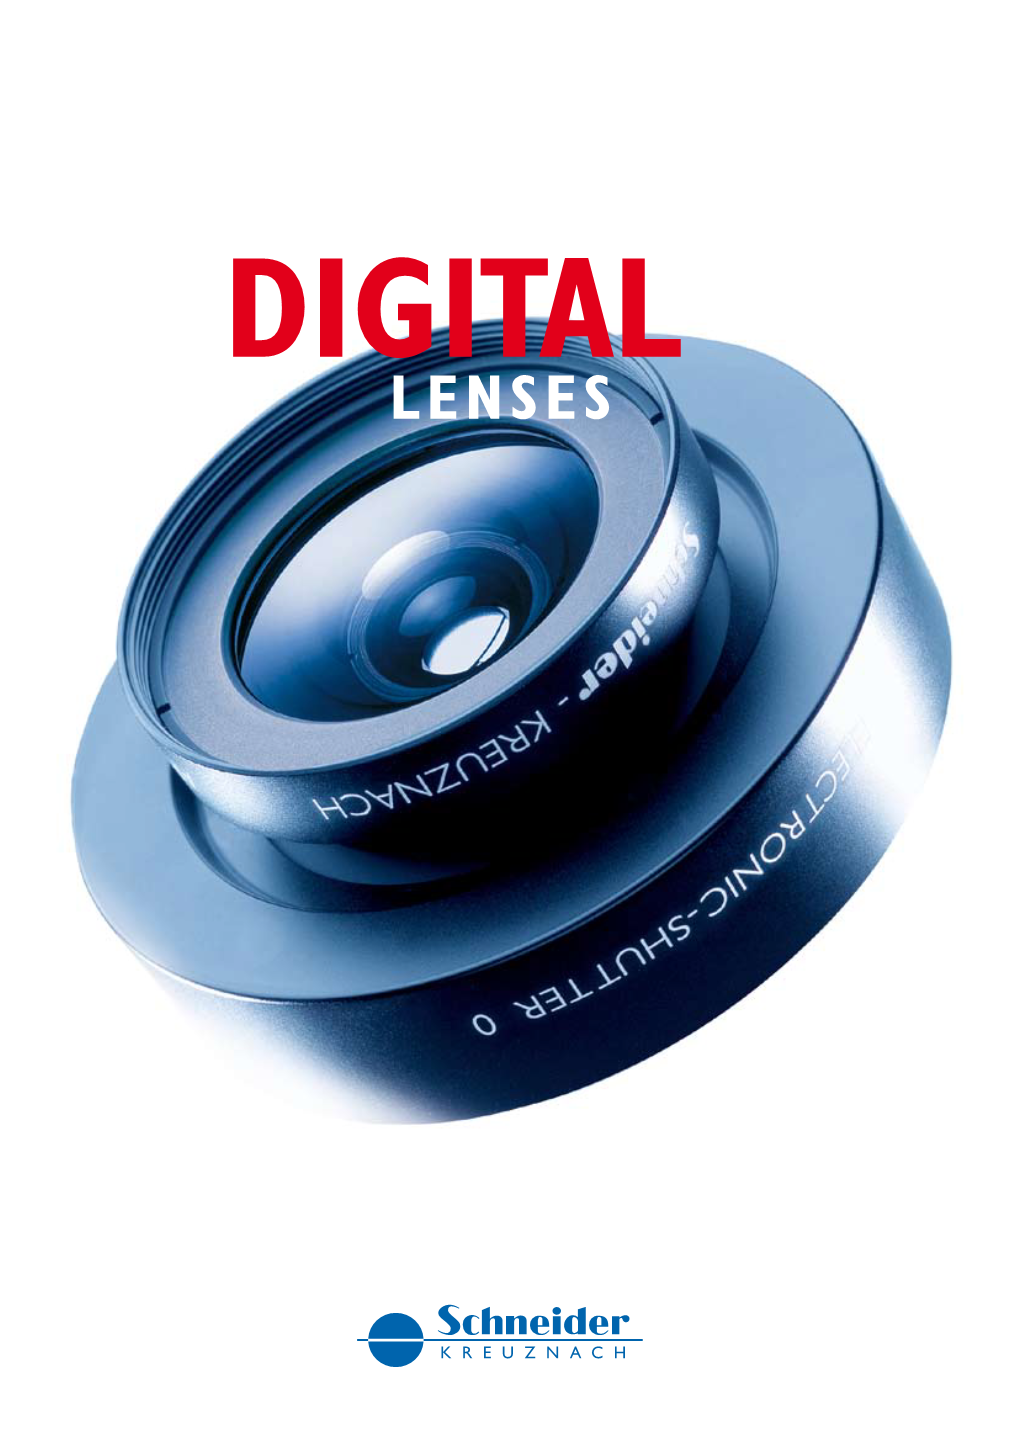 Digital Lenses